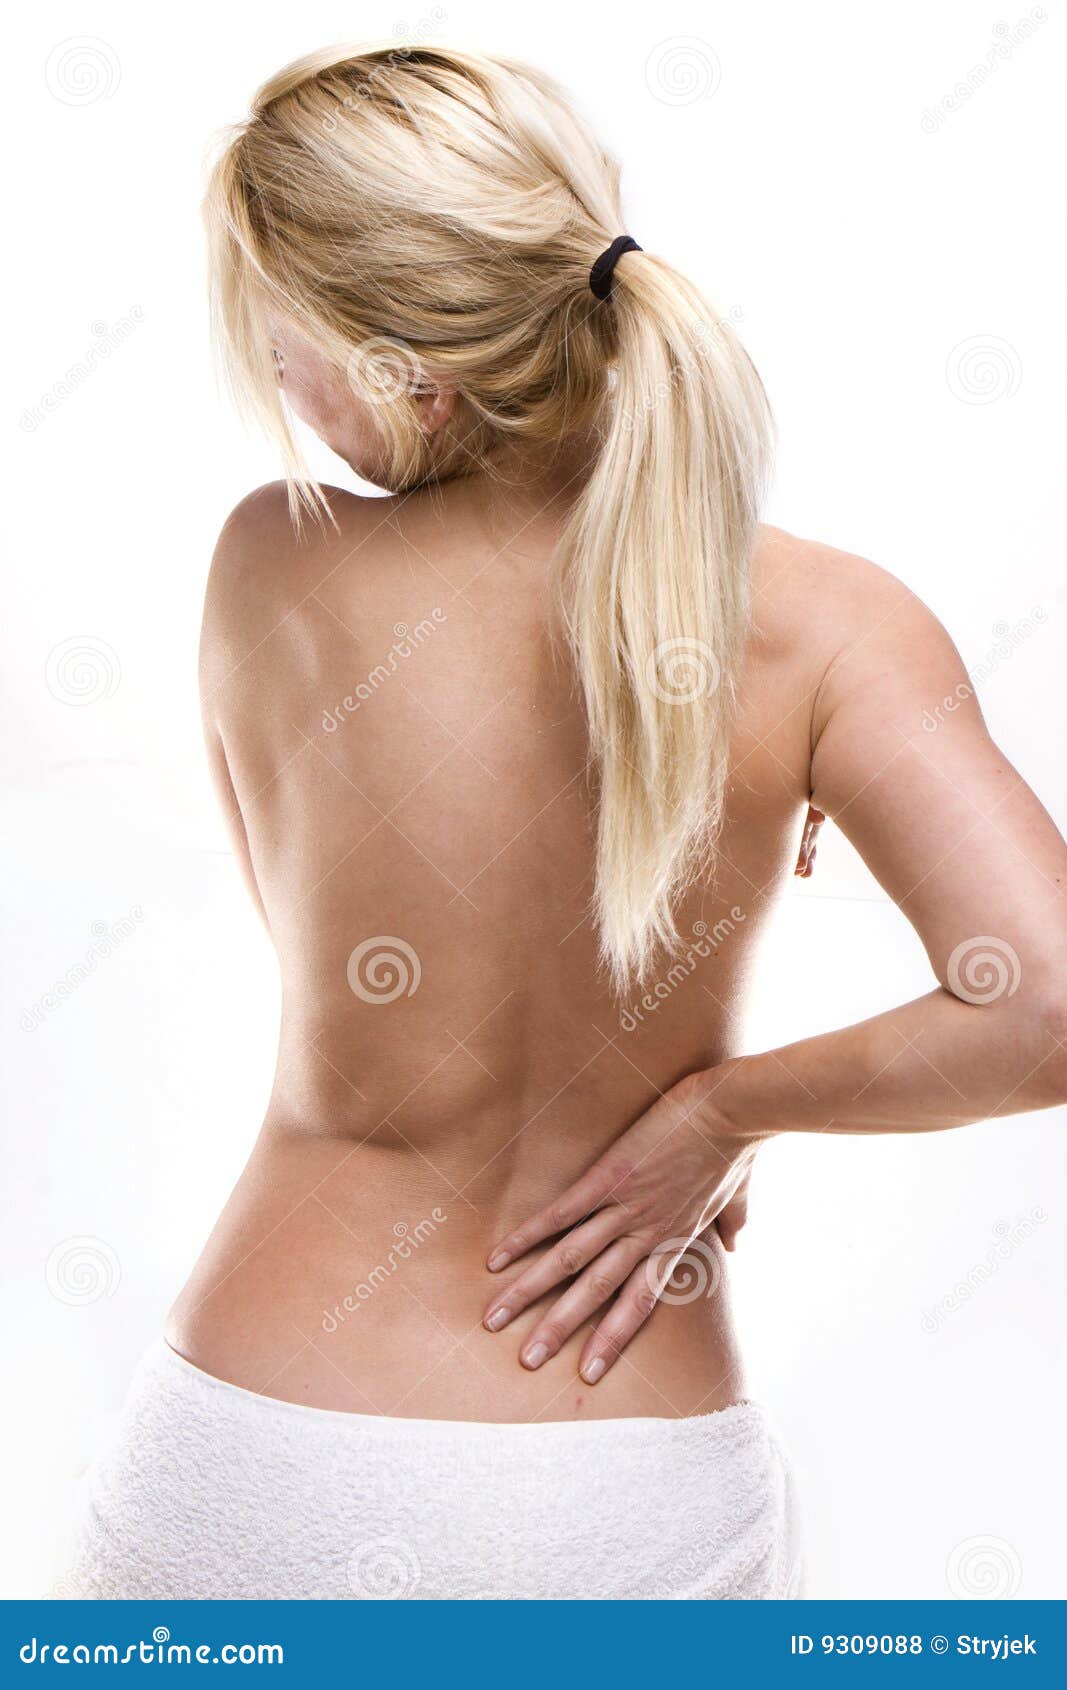 Поясница у девушки. Женская спина. Женщина со спины. Здоровая женская спина. Поясница фото.